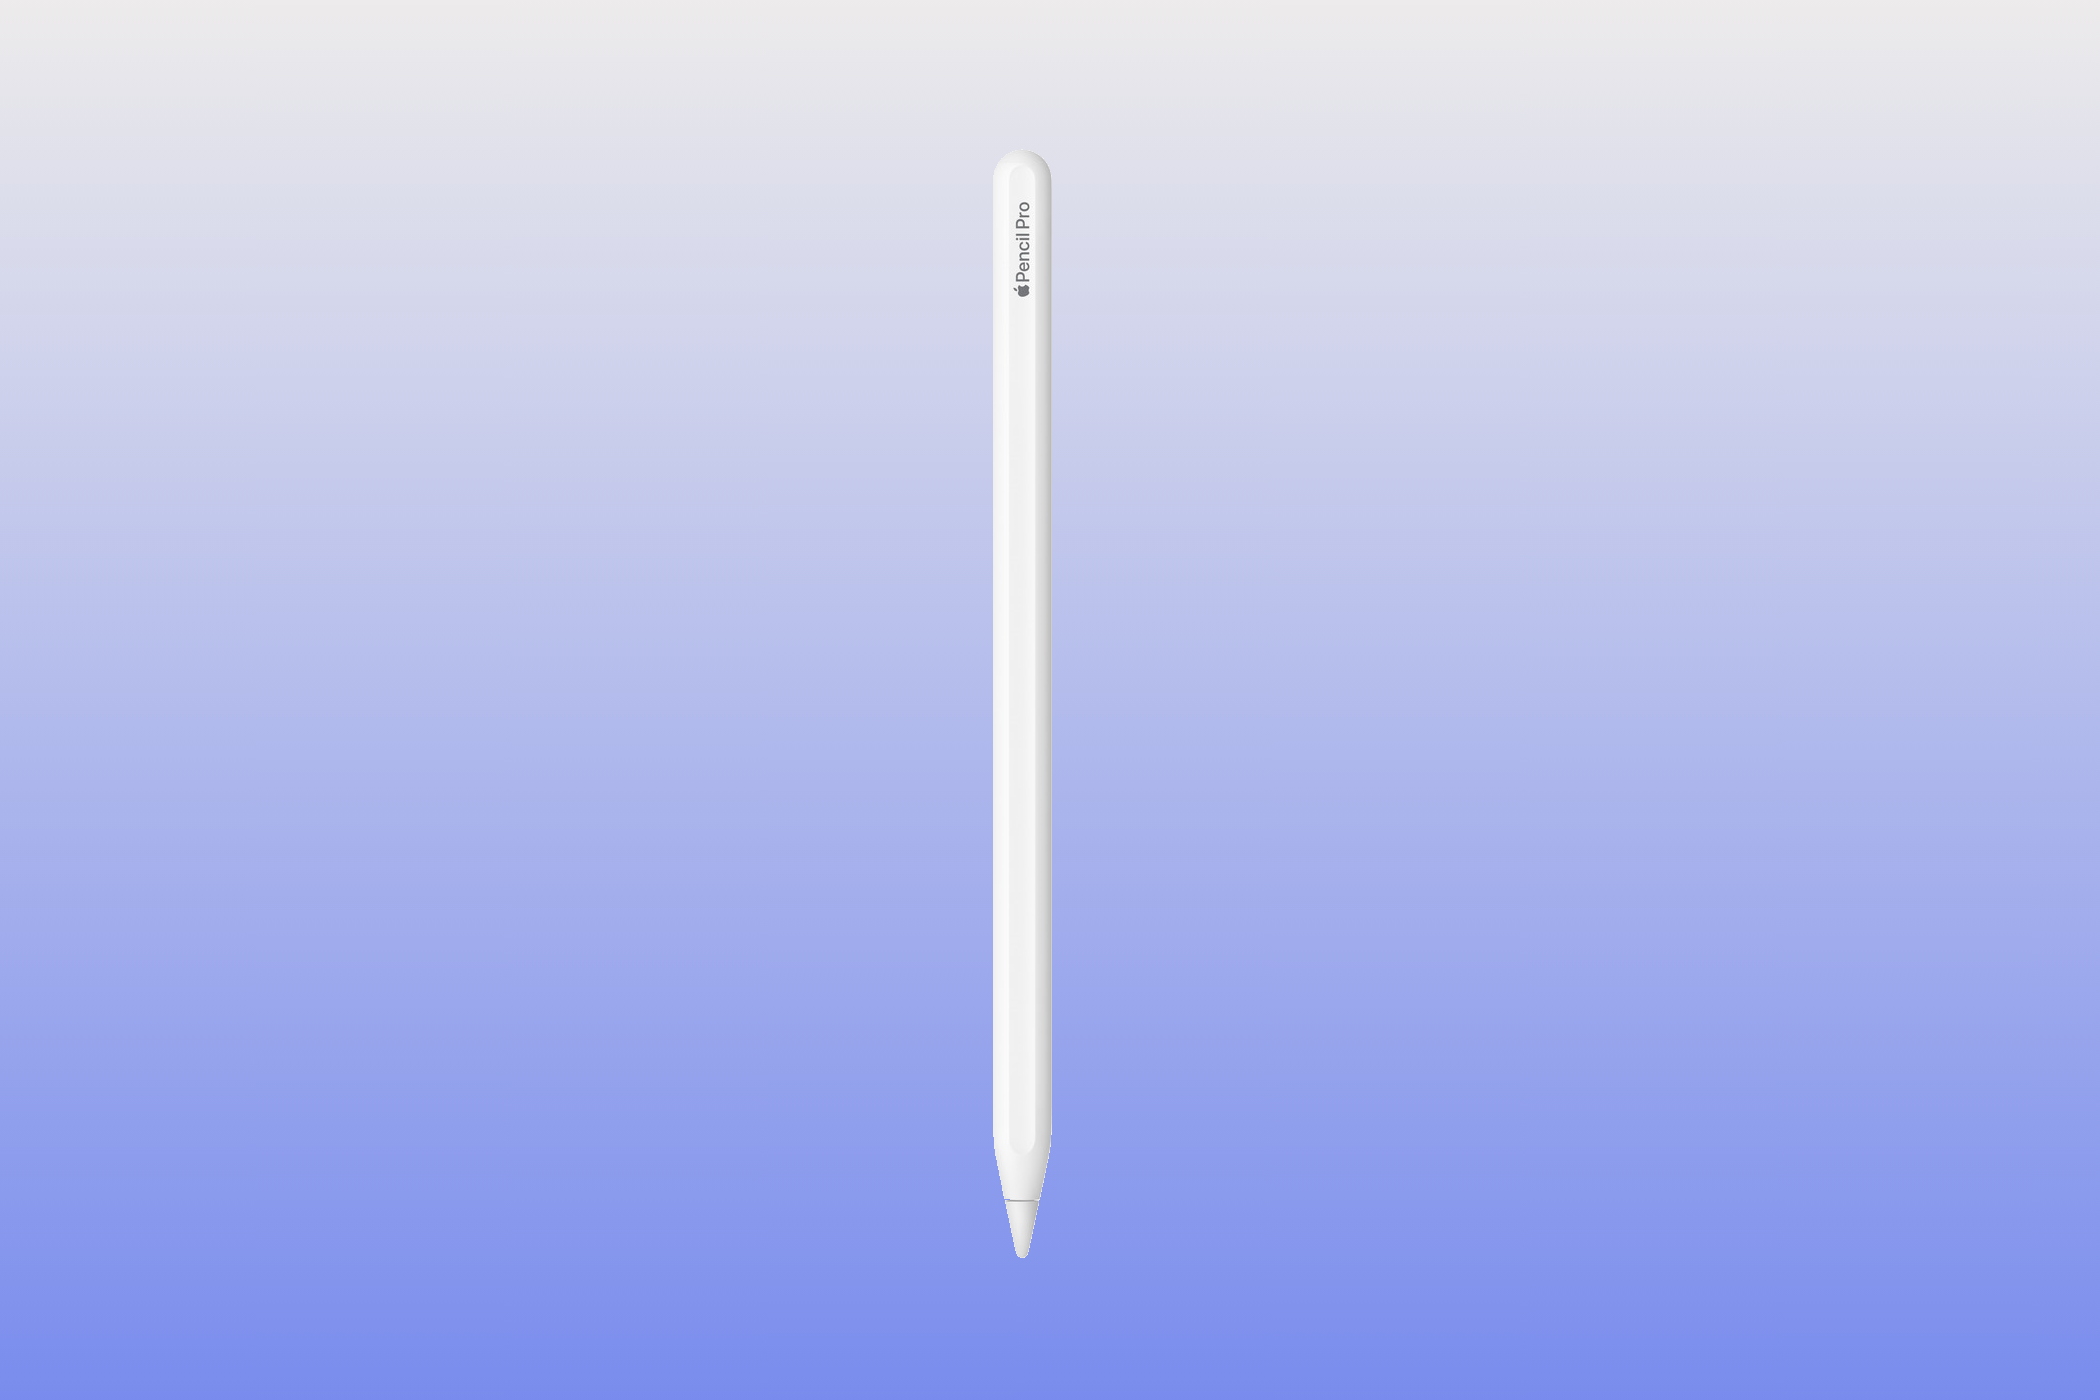 Apple Pencil Pro